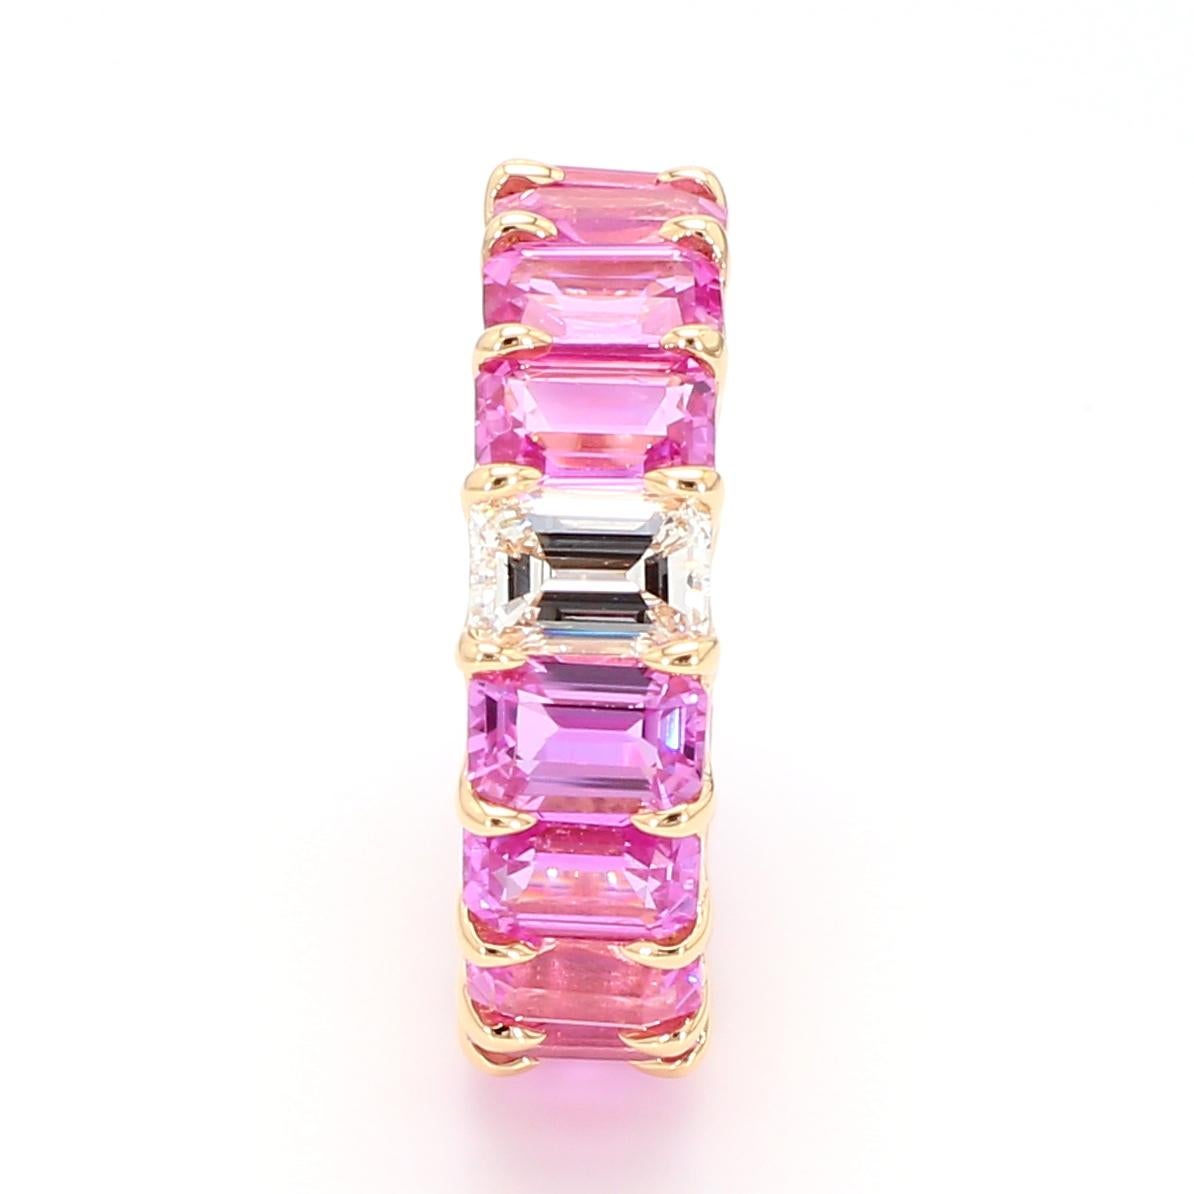 Schöne und Forward Eternity Band.
Ring mit 16 perfekt aufeinander abgestimmten rosa Saphiren mit einem Gewicht von 11,14 Karat und
1 Diamant im Smaragdschliff mit einem Gewicht von 0,71 Karat.
Fassung aus 18 Karat Roségold.
Größe 6.
Kann mit der